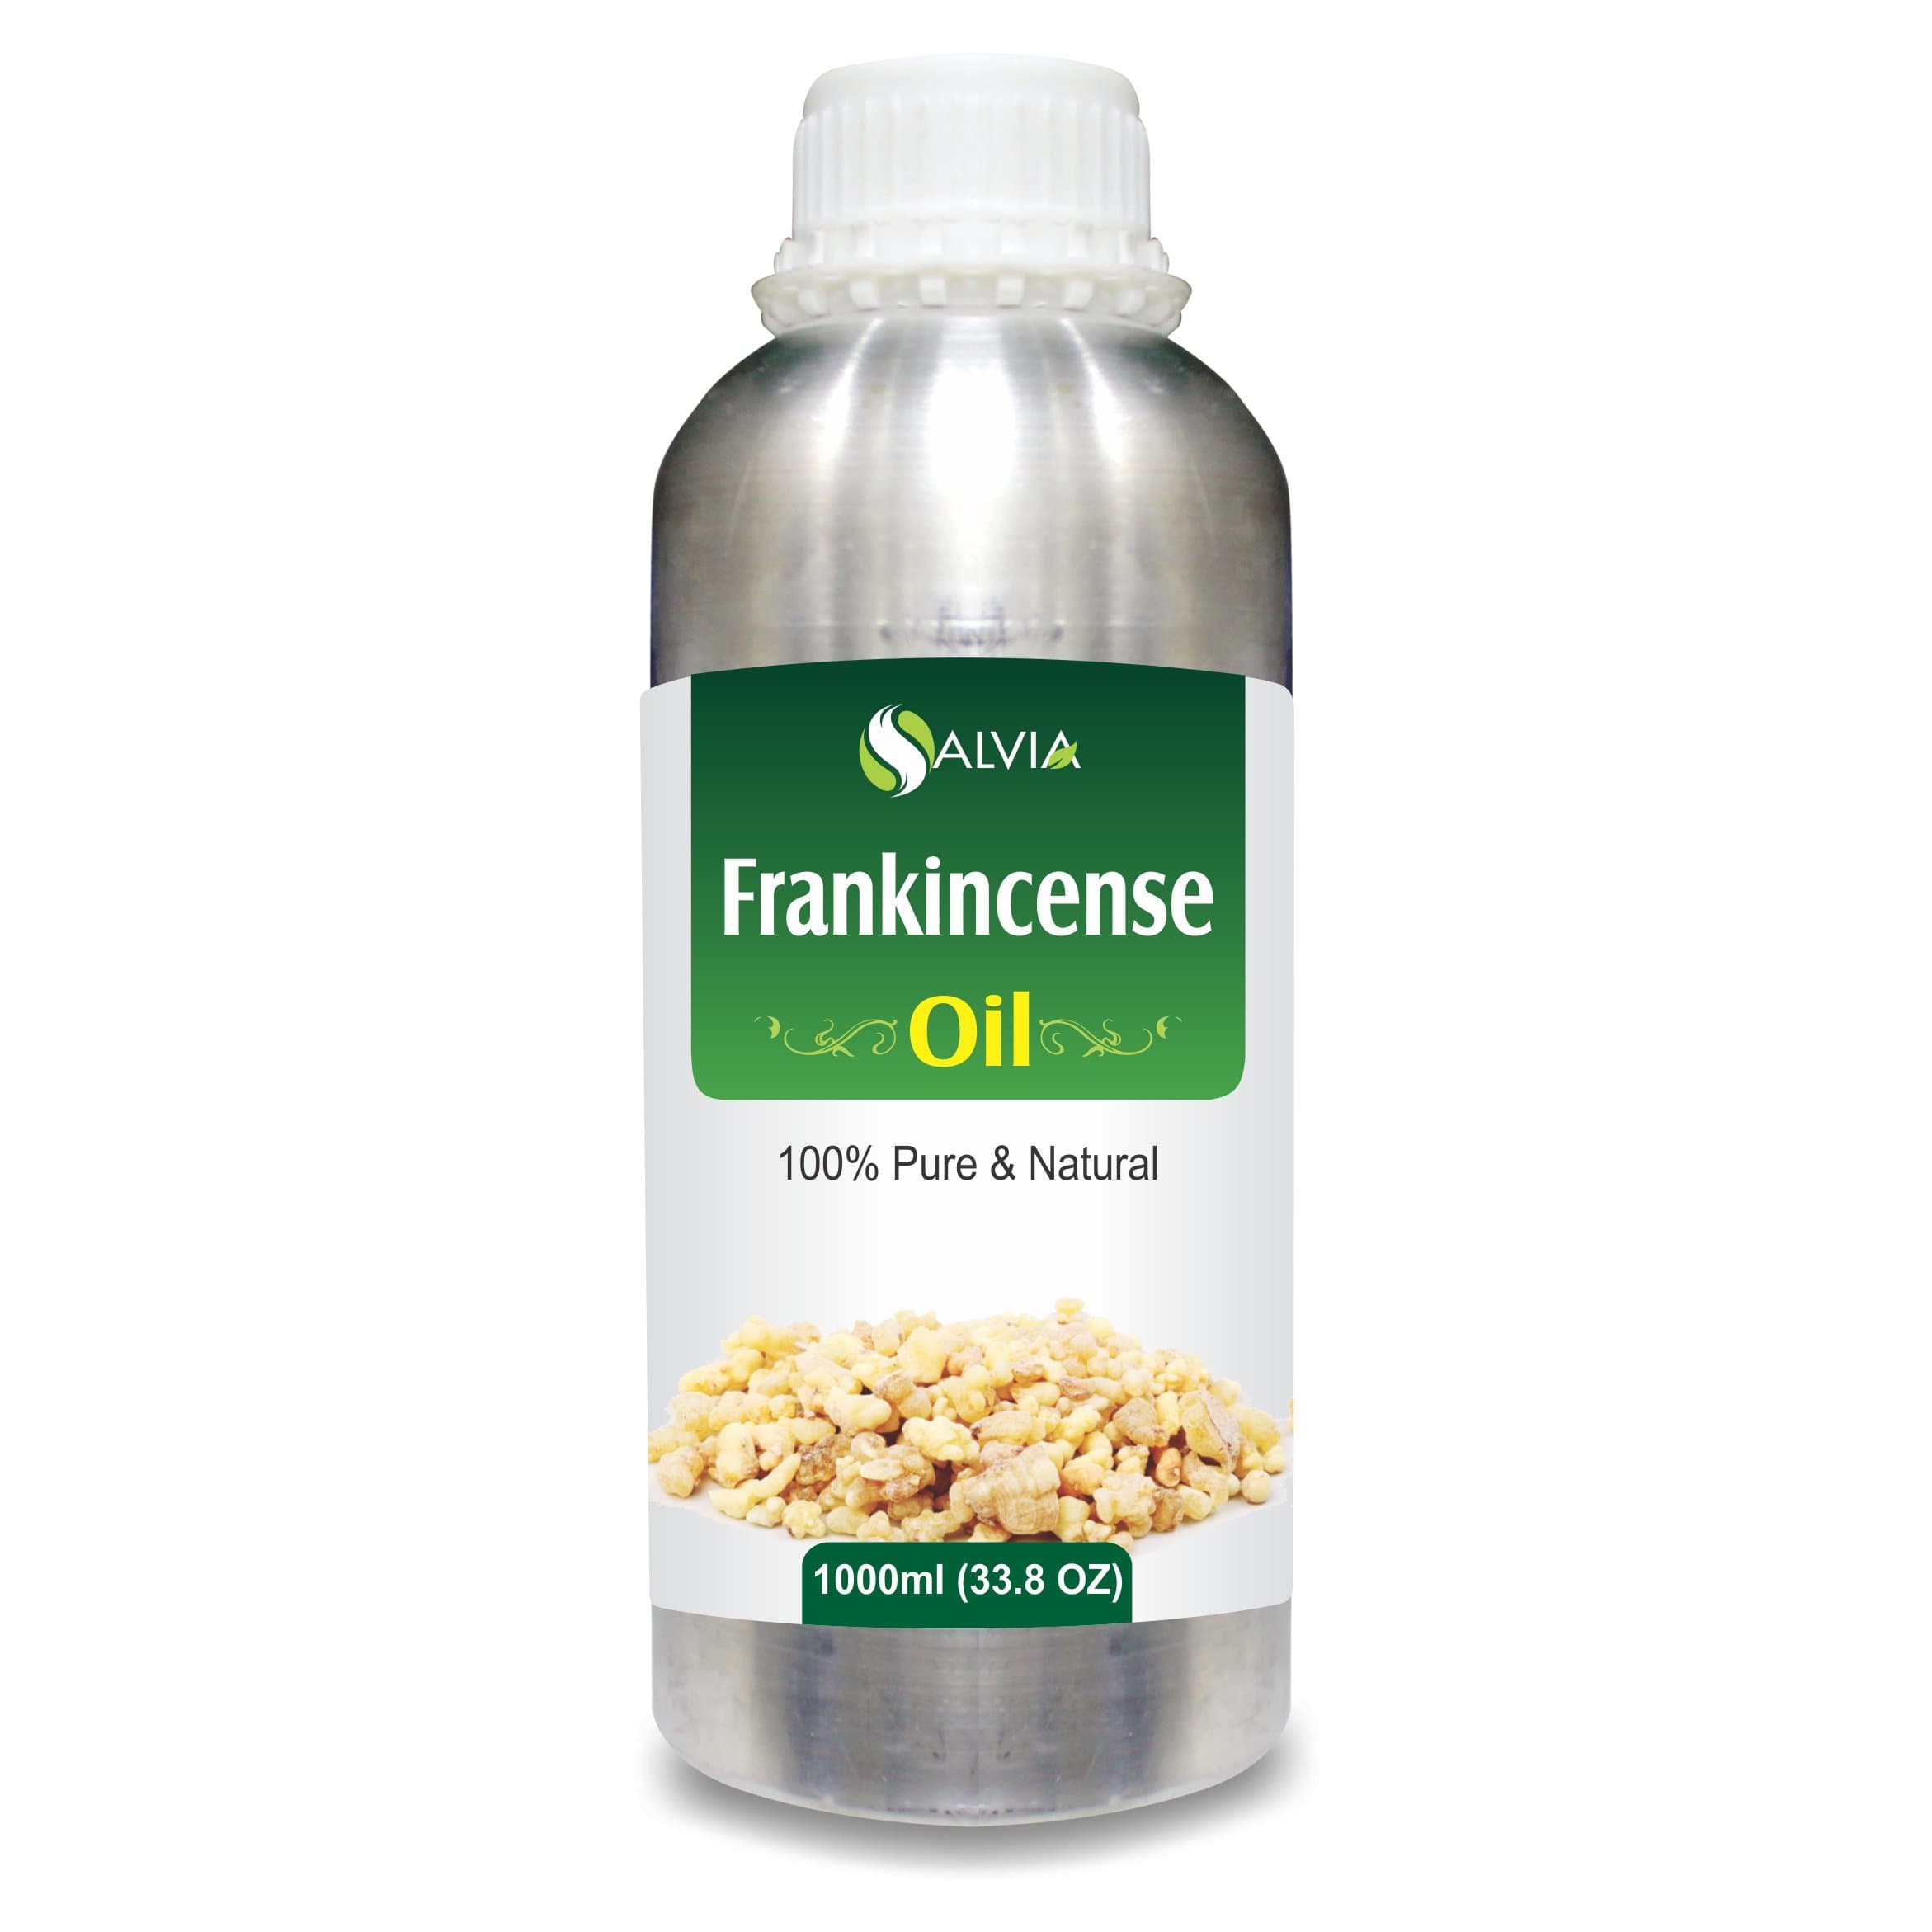 frankincense scent